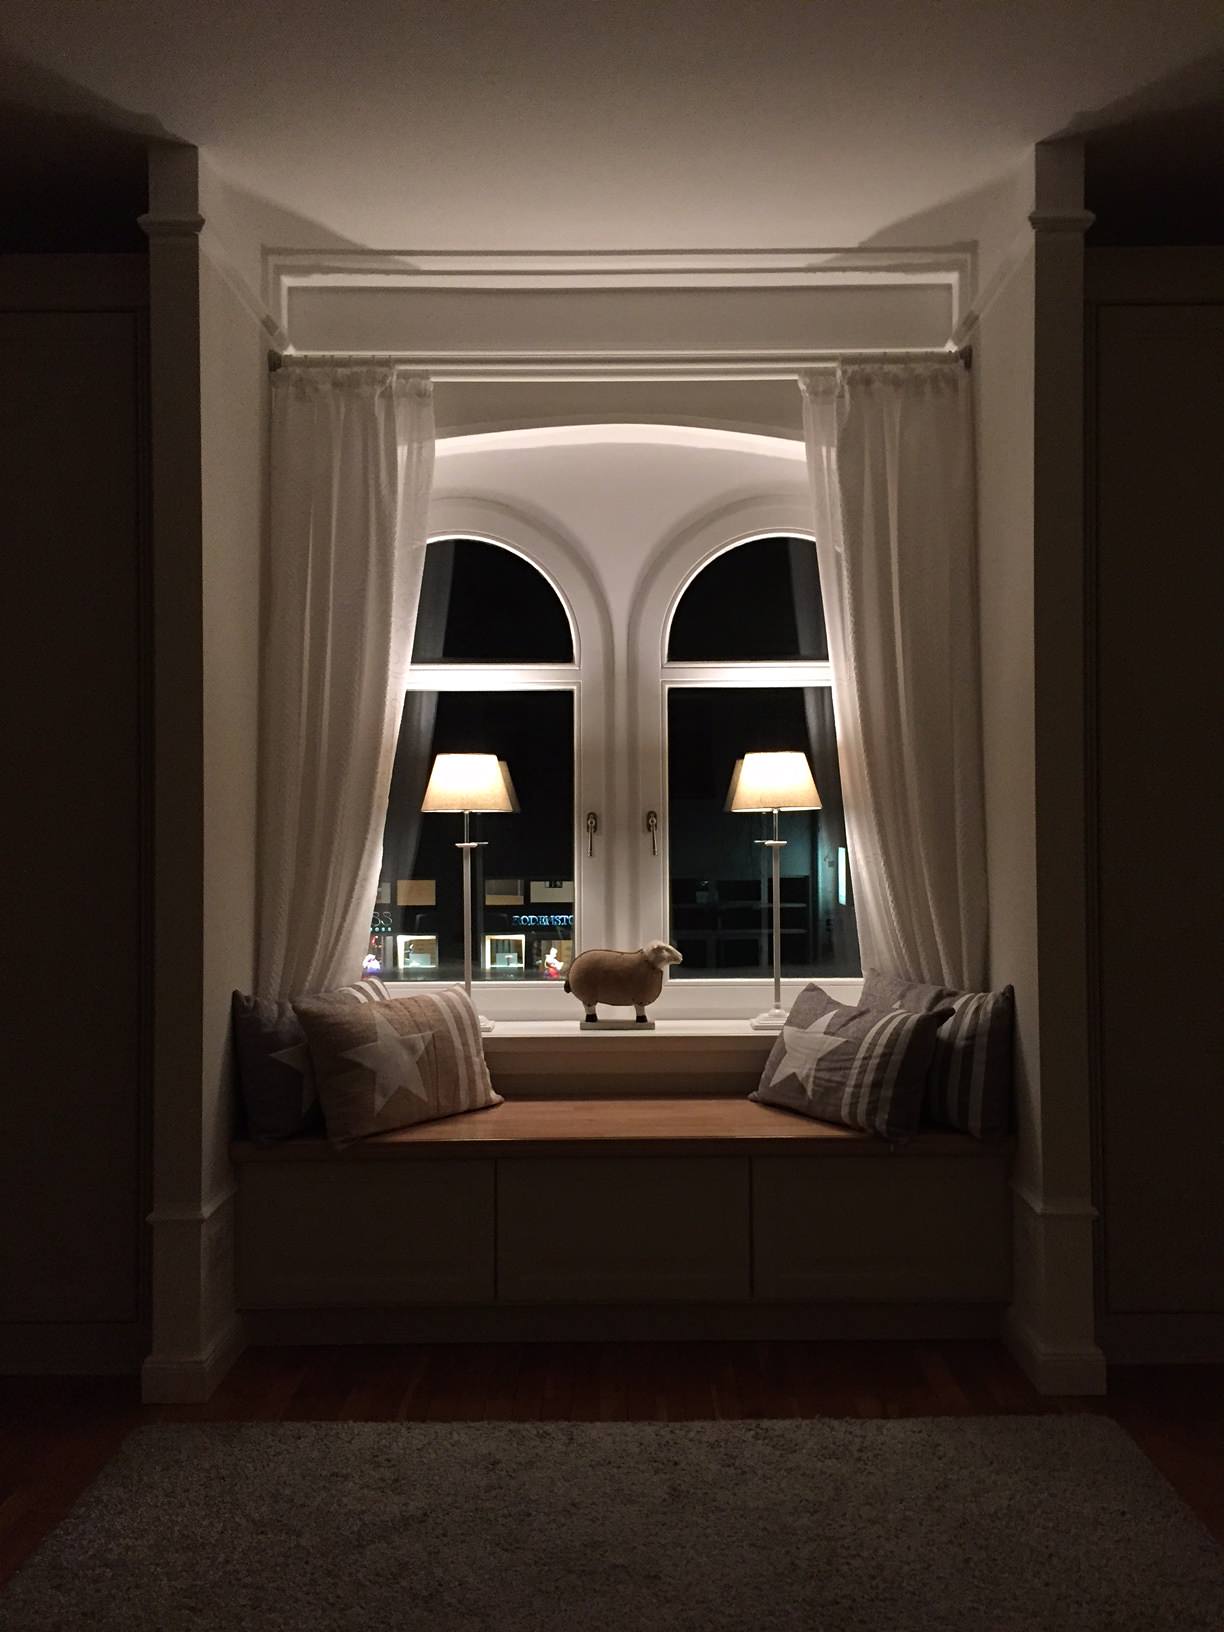 Fenstersitzbank im abendlichen Lampenschein